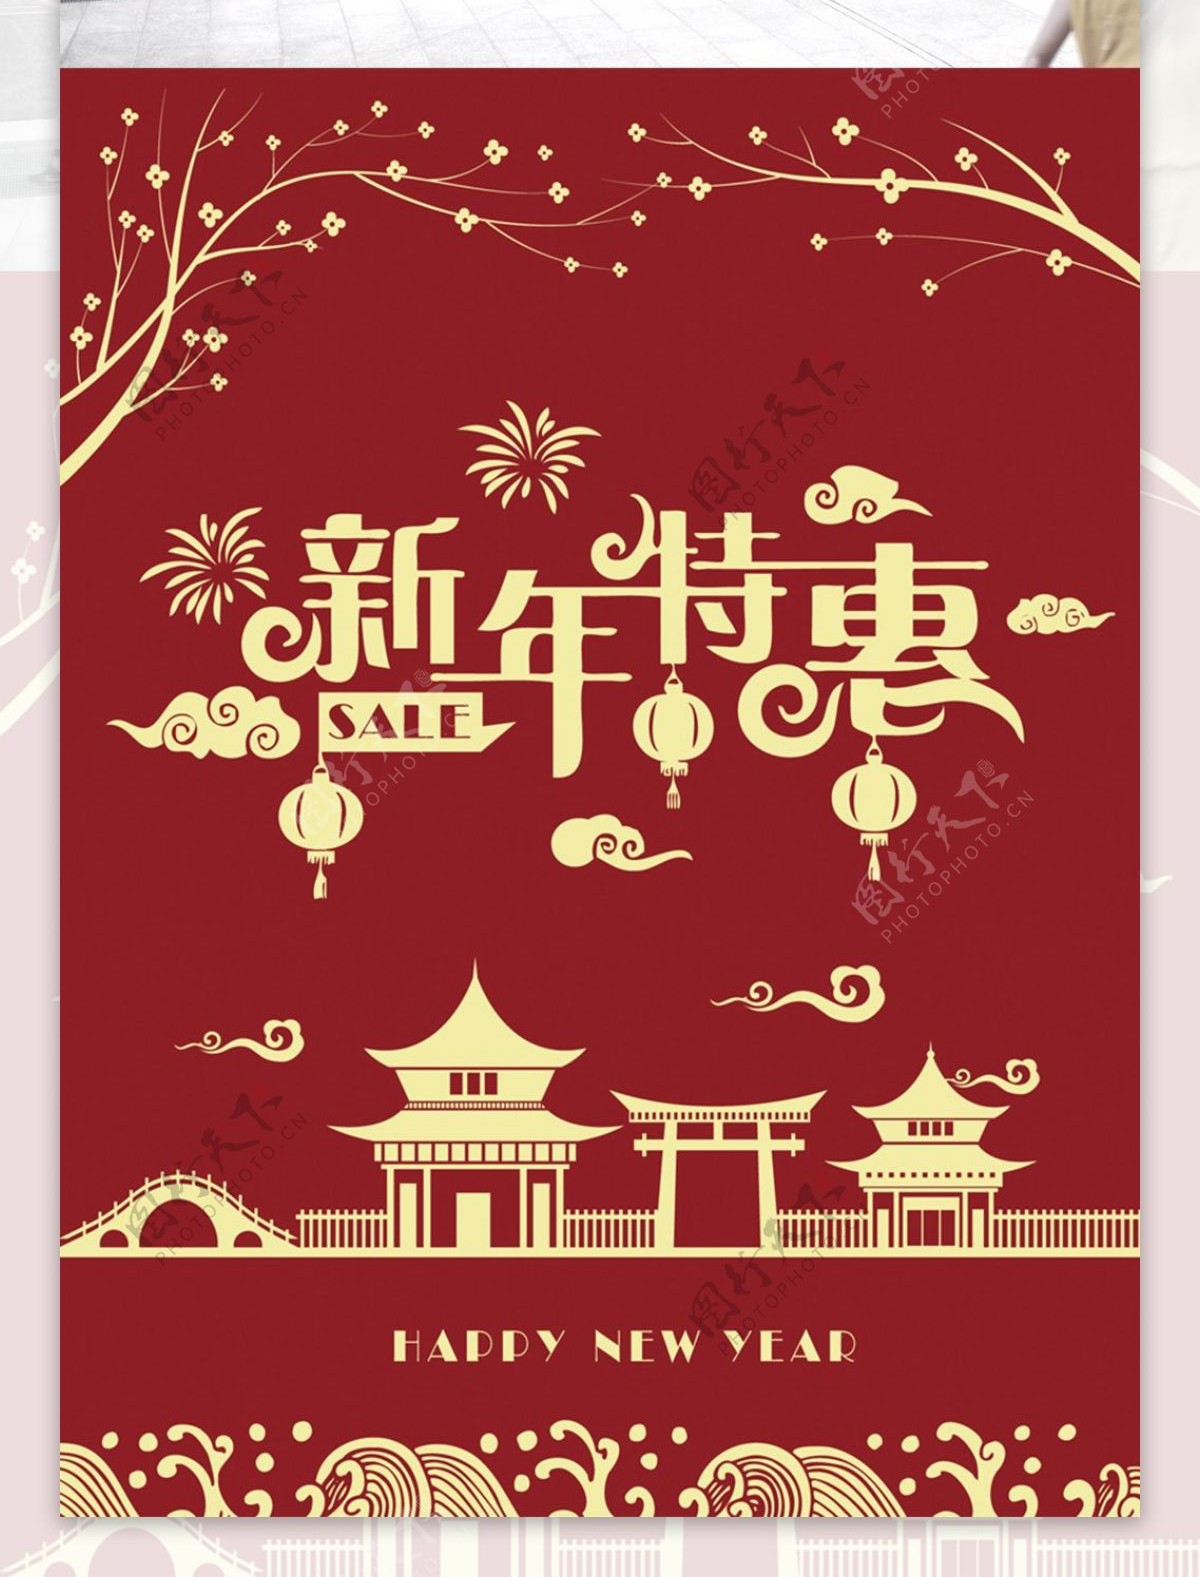 2018新春年货节促销宣传海报